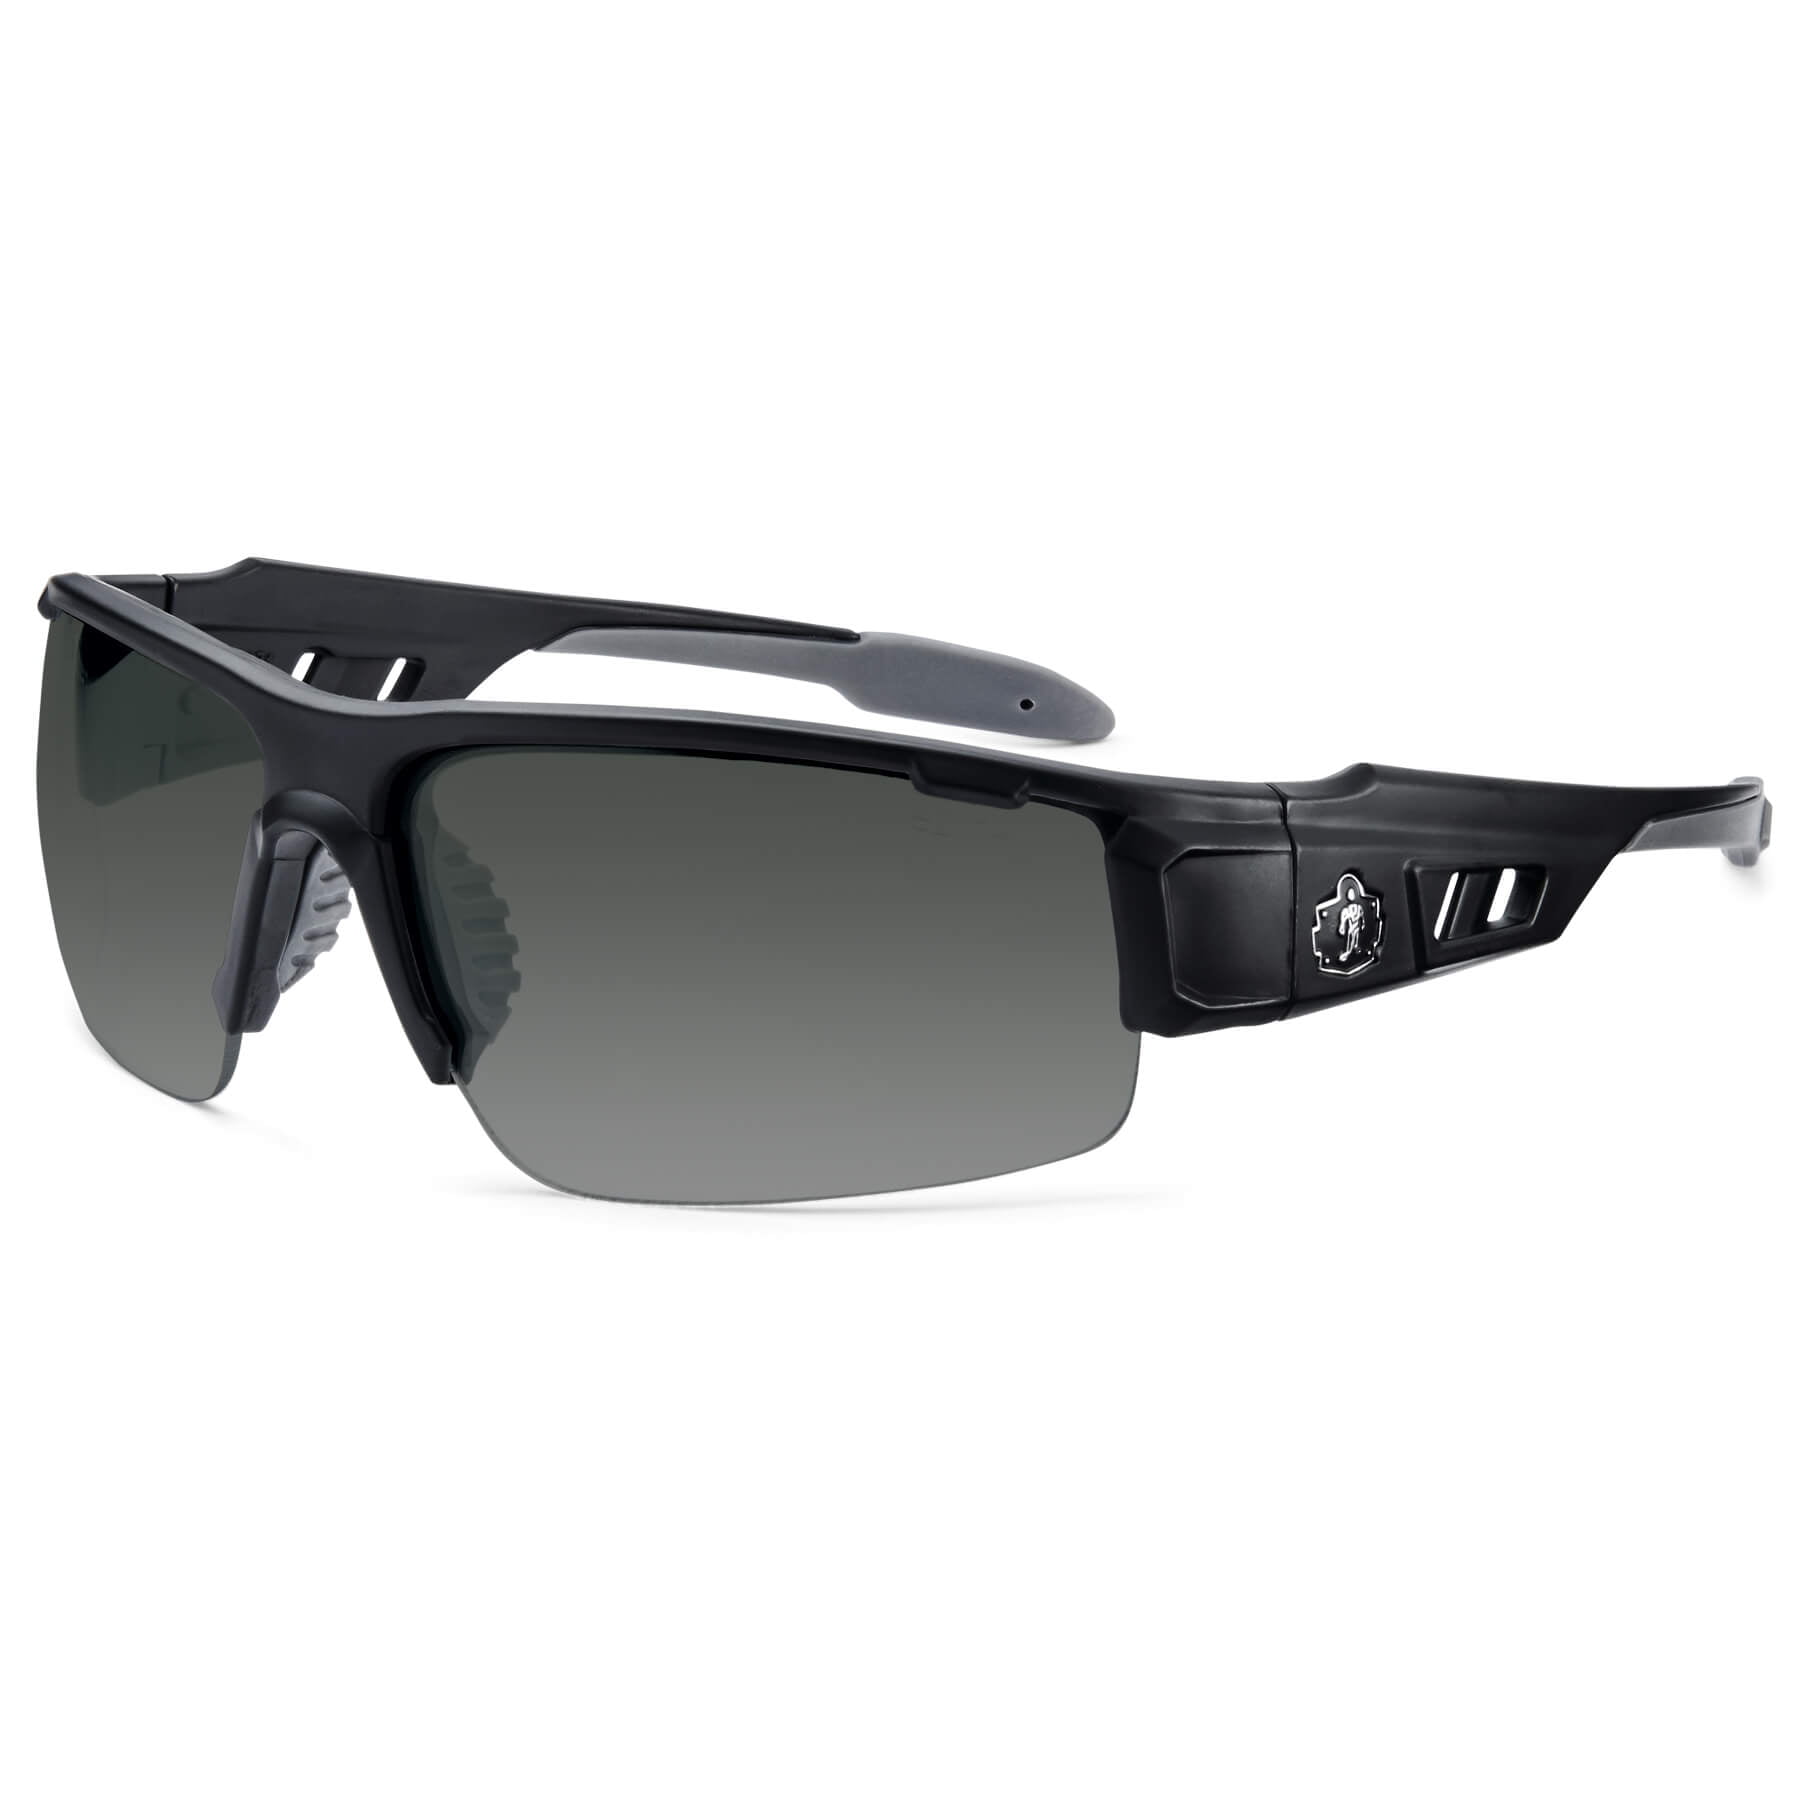 Ergodyne Skullerz DAGR Anti-fog Safety Glasses-black Frame In/outdoor Lens for sale online 